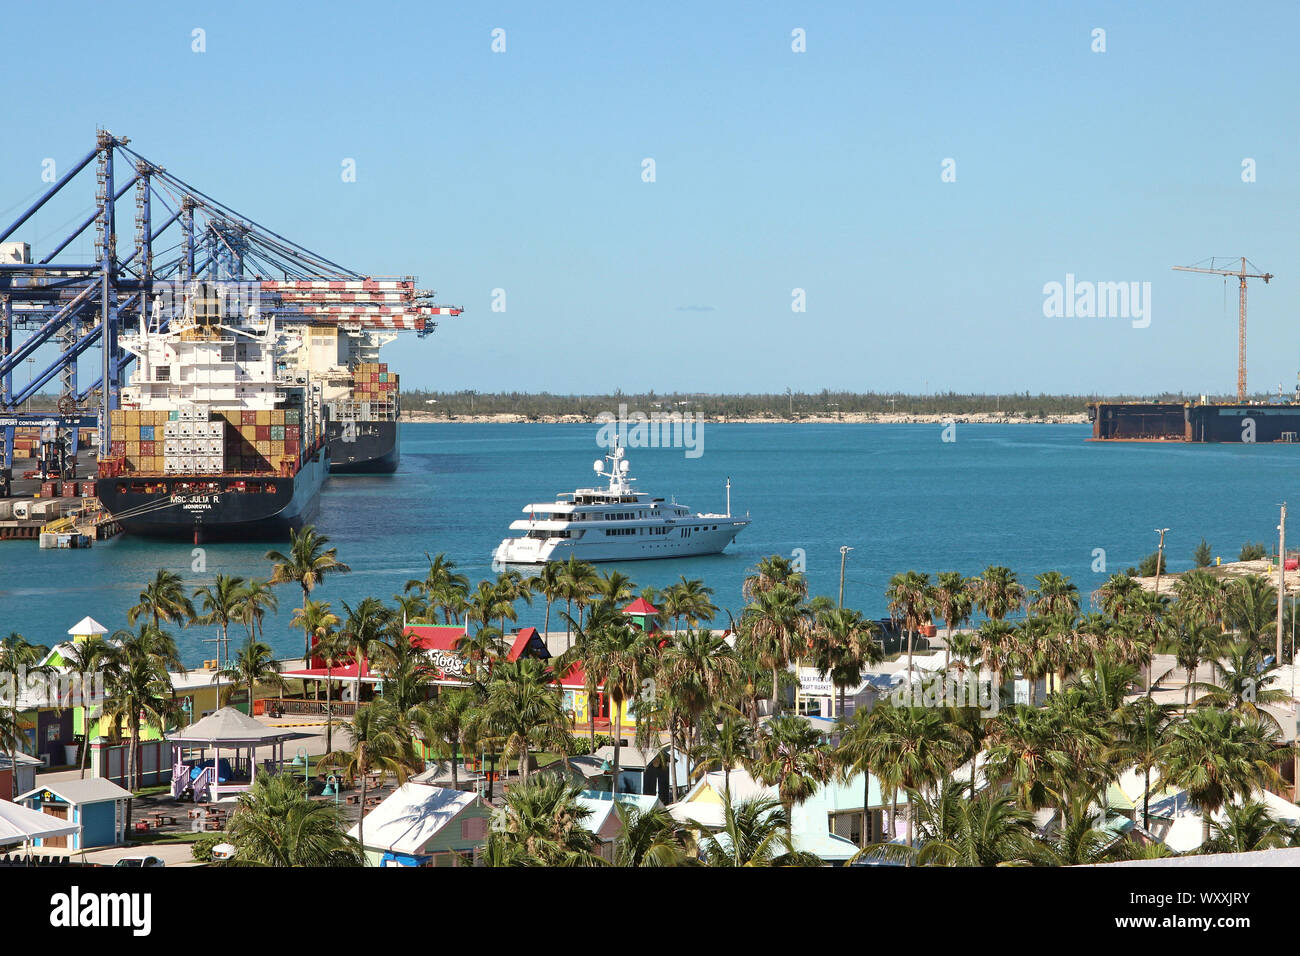 Der Hafen von Freeport, Grand Bahama Island. Ein Terminal für Kreuzfahrtschiffe sowie ein Container Hafen und Werft. April 2018. Stockfoto